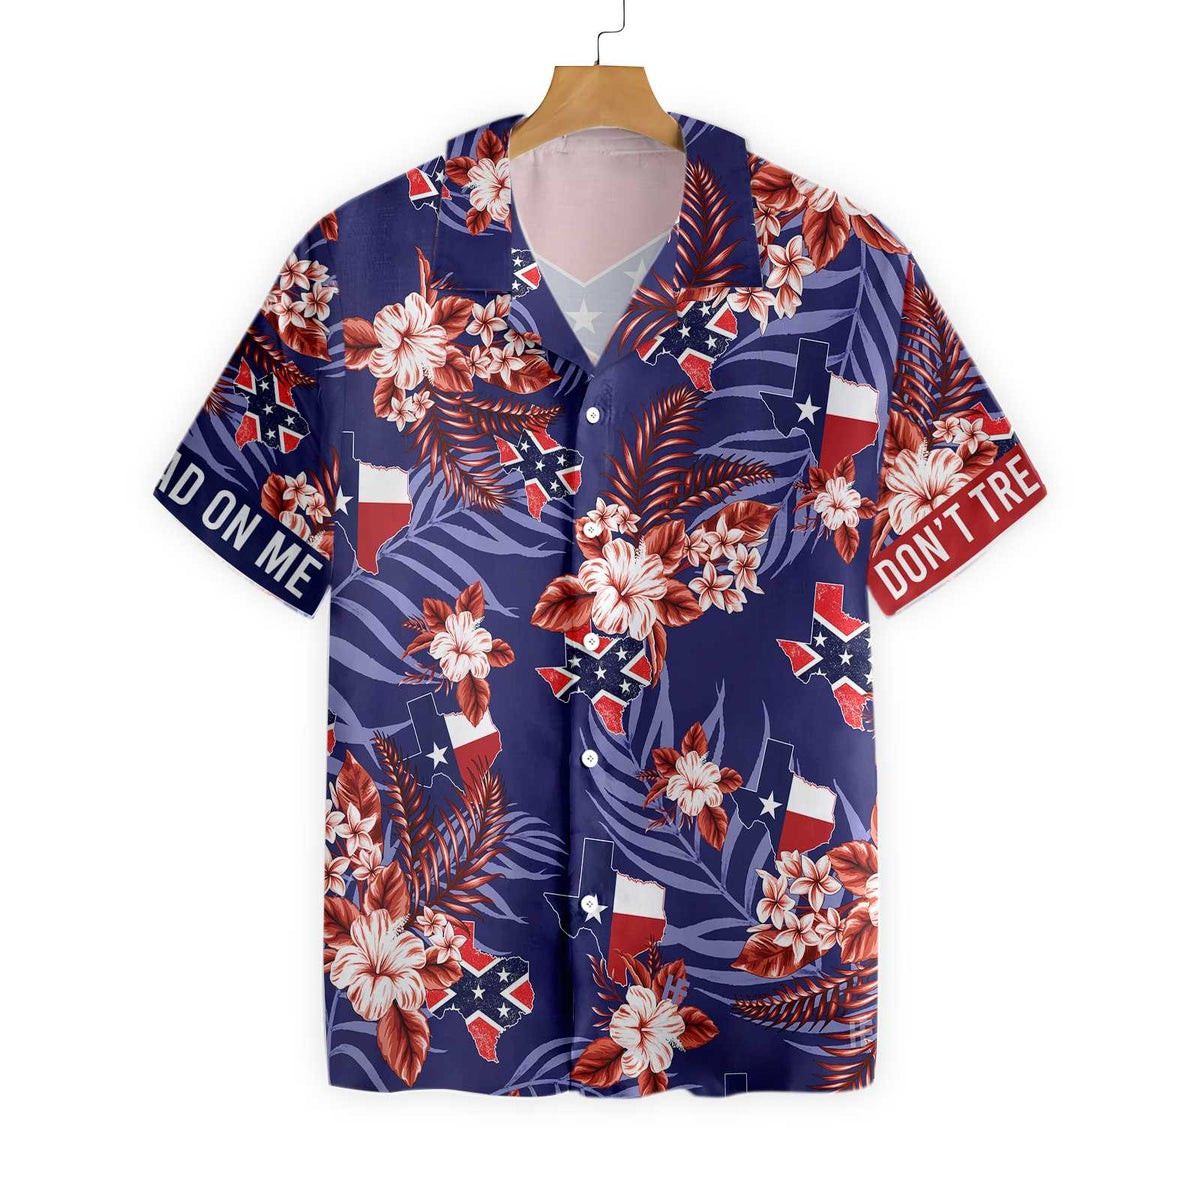 Bluebonnet Dont Mess with Texas Hawaiian Shirt For Men Blue Version Texas State Shirt Proud Texas Shirt Men